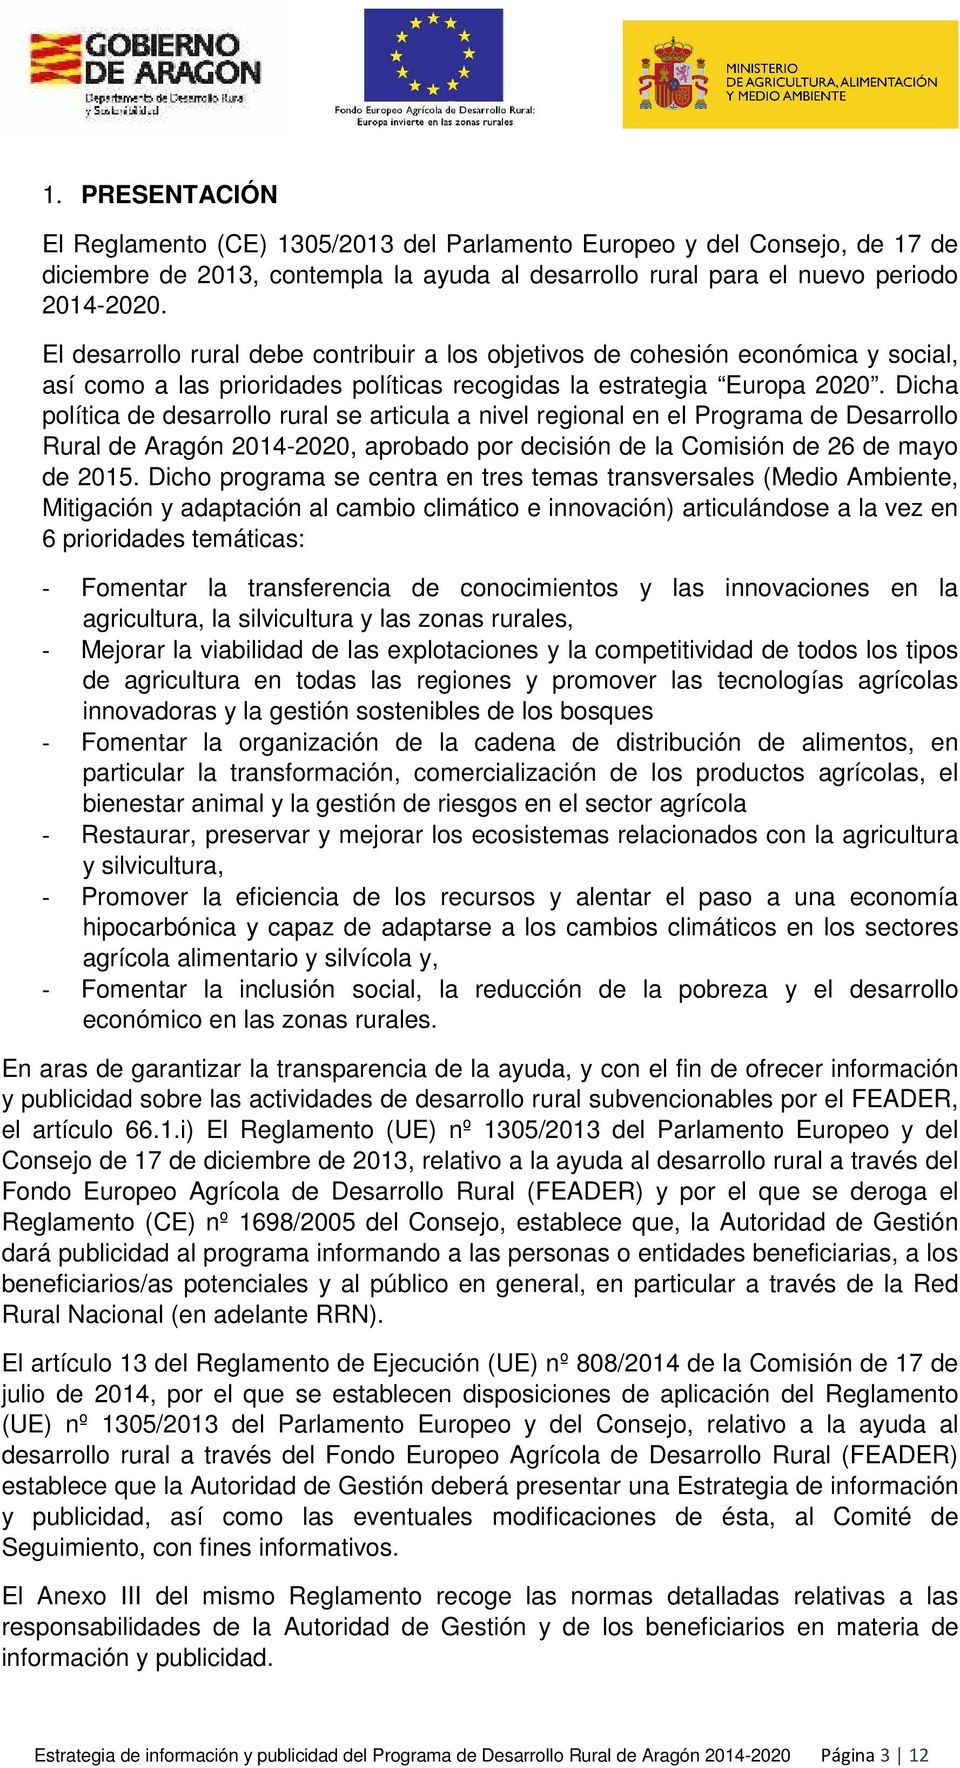 Dicha plítica de desarrll rural se articula a nivel reginal en el Prgrama de Desarrll Rural de Aragón 2014-2020, aprbad pr decisión de la Cmisión de 26 de may de 2015.